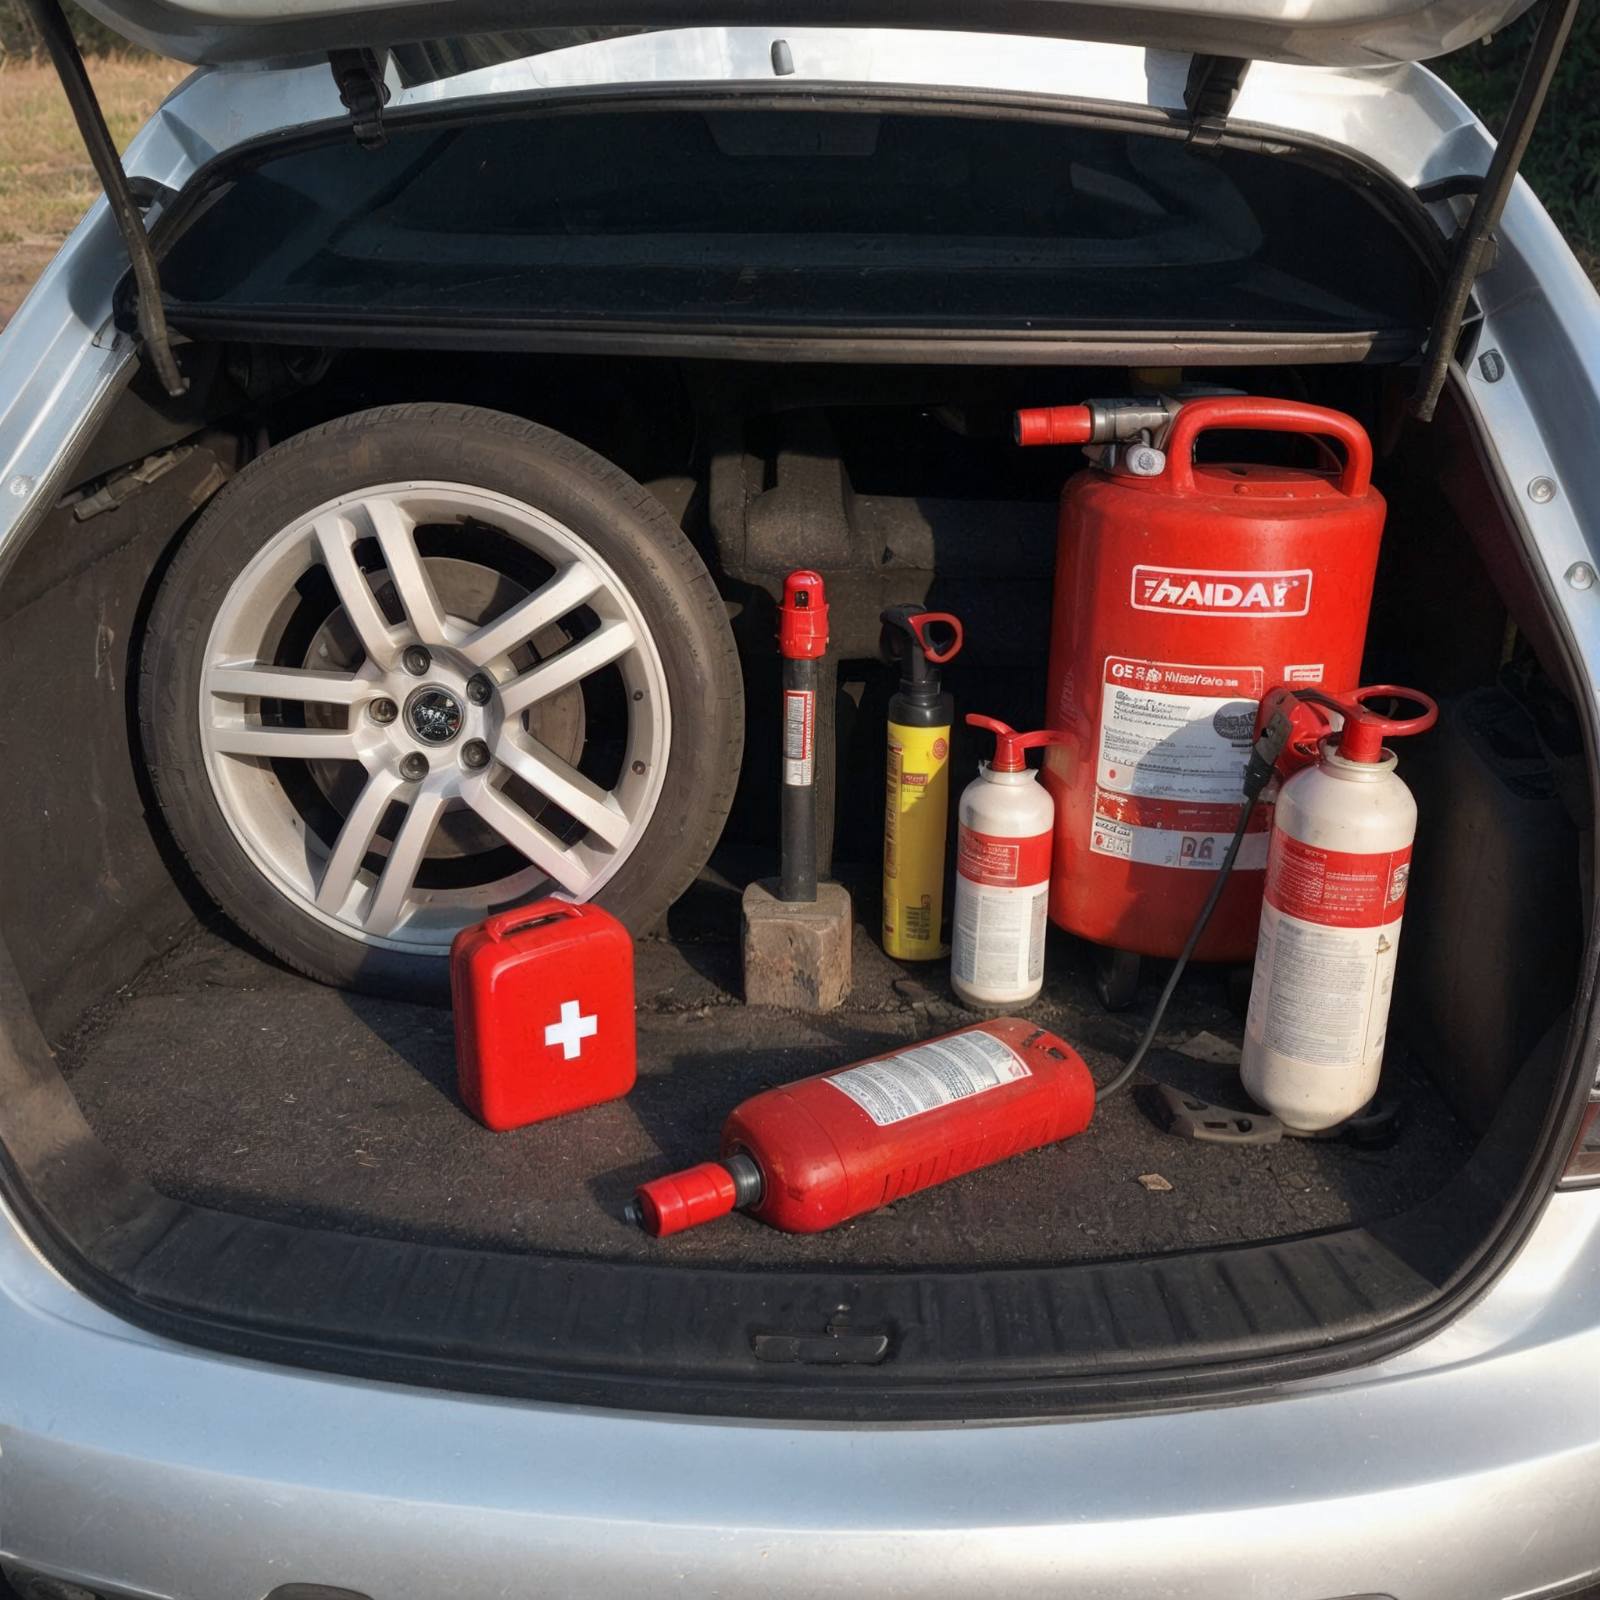 Rezervni točak, prva pomoć, vatrogasni aparati i druge alatke za hitne situacije raspoređeni u prtljažniku srebrnog automobila.